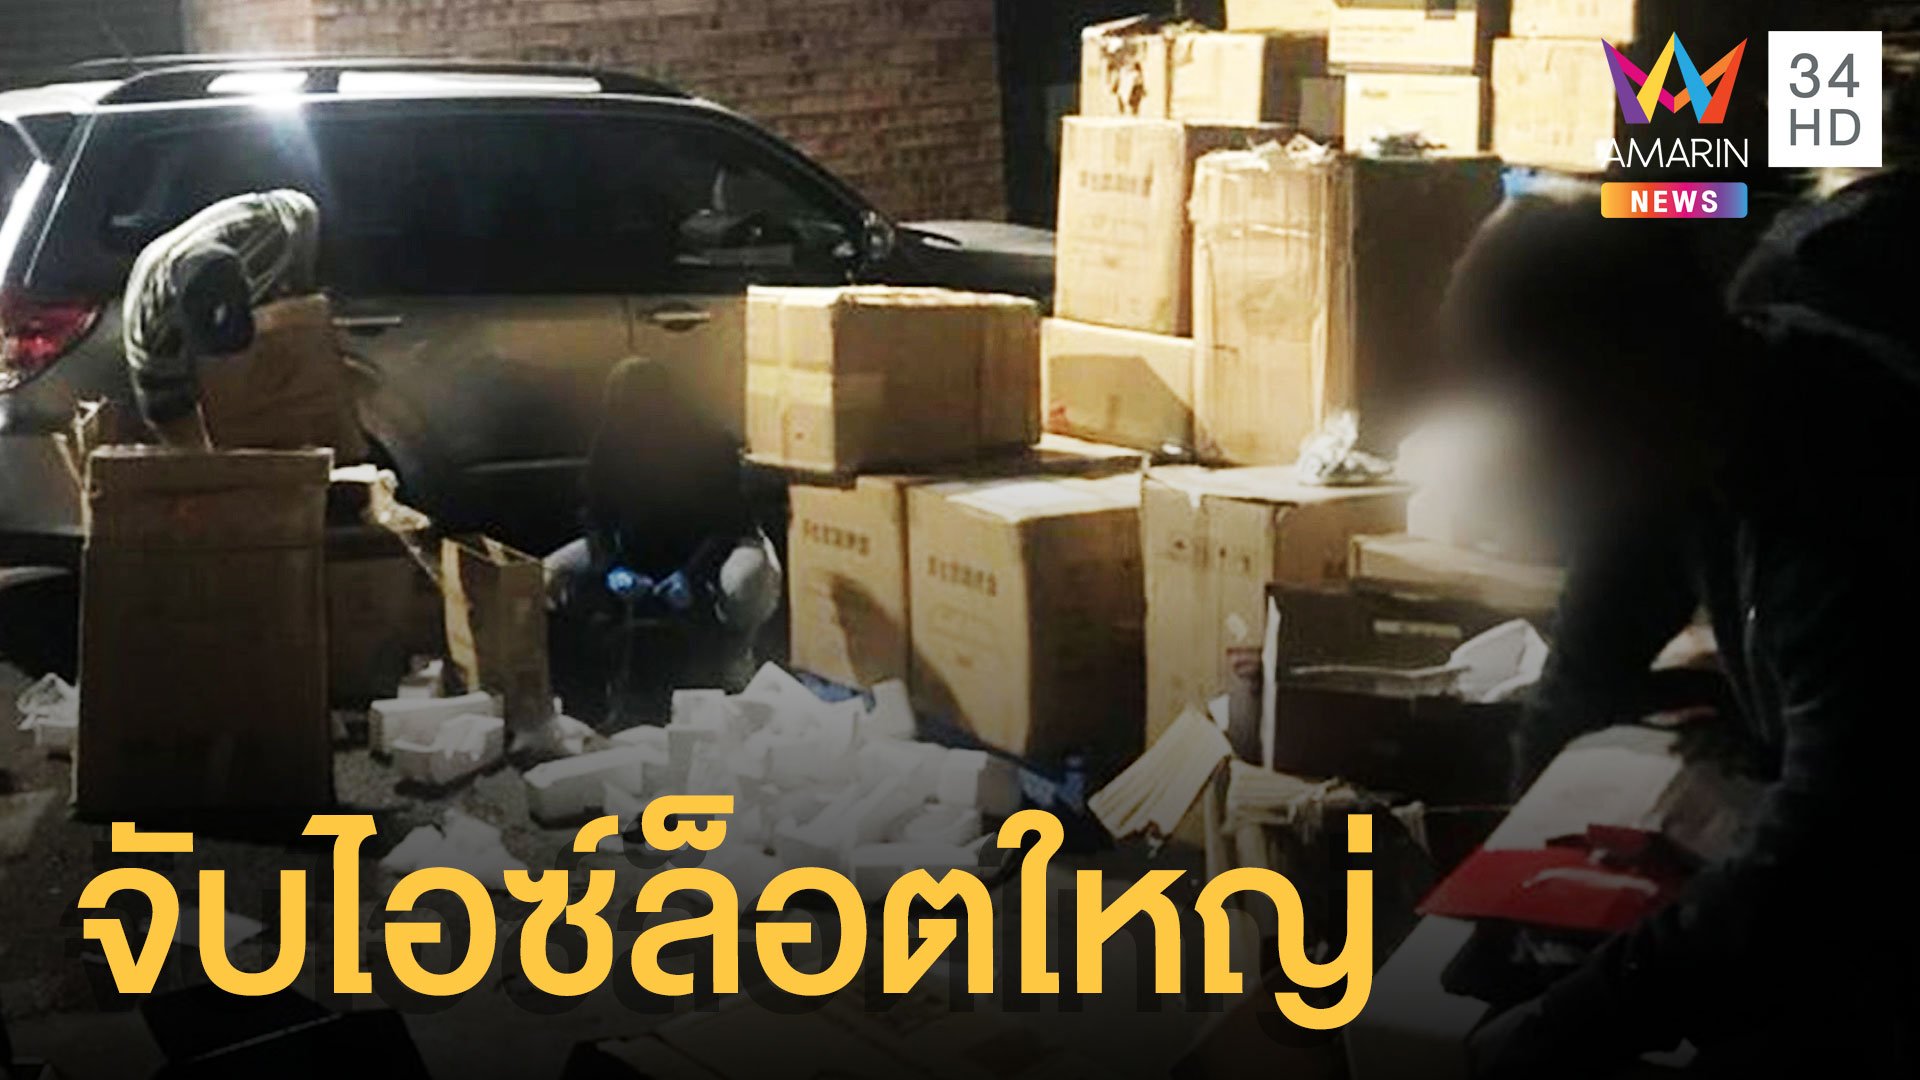 ยาไอซ์ล็อตใหญ่ส่งจากไทยไปออสเตรเลีย 3,000 ล้าน | ข่าวอรุณอมรินทร์ | 18 พ.ค. 64 | AMARIN TVHD34